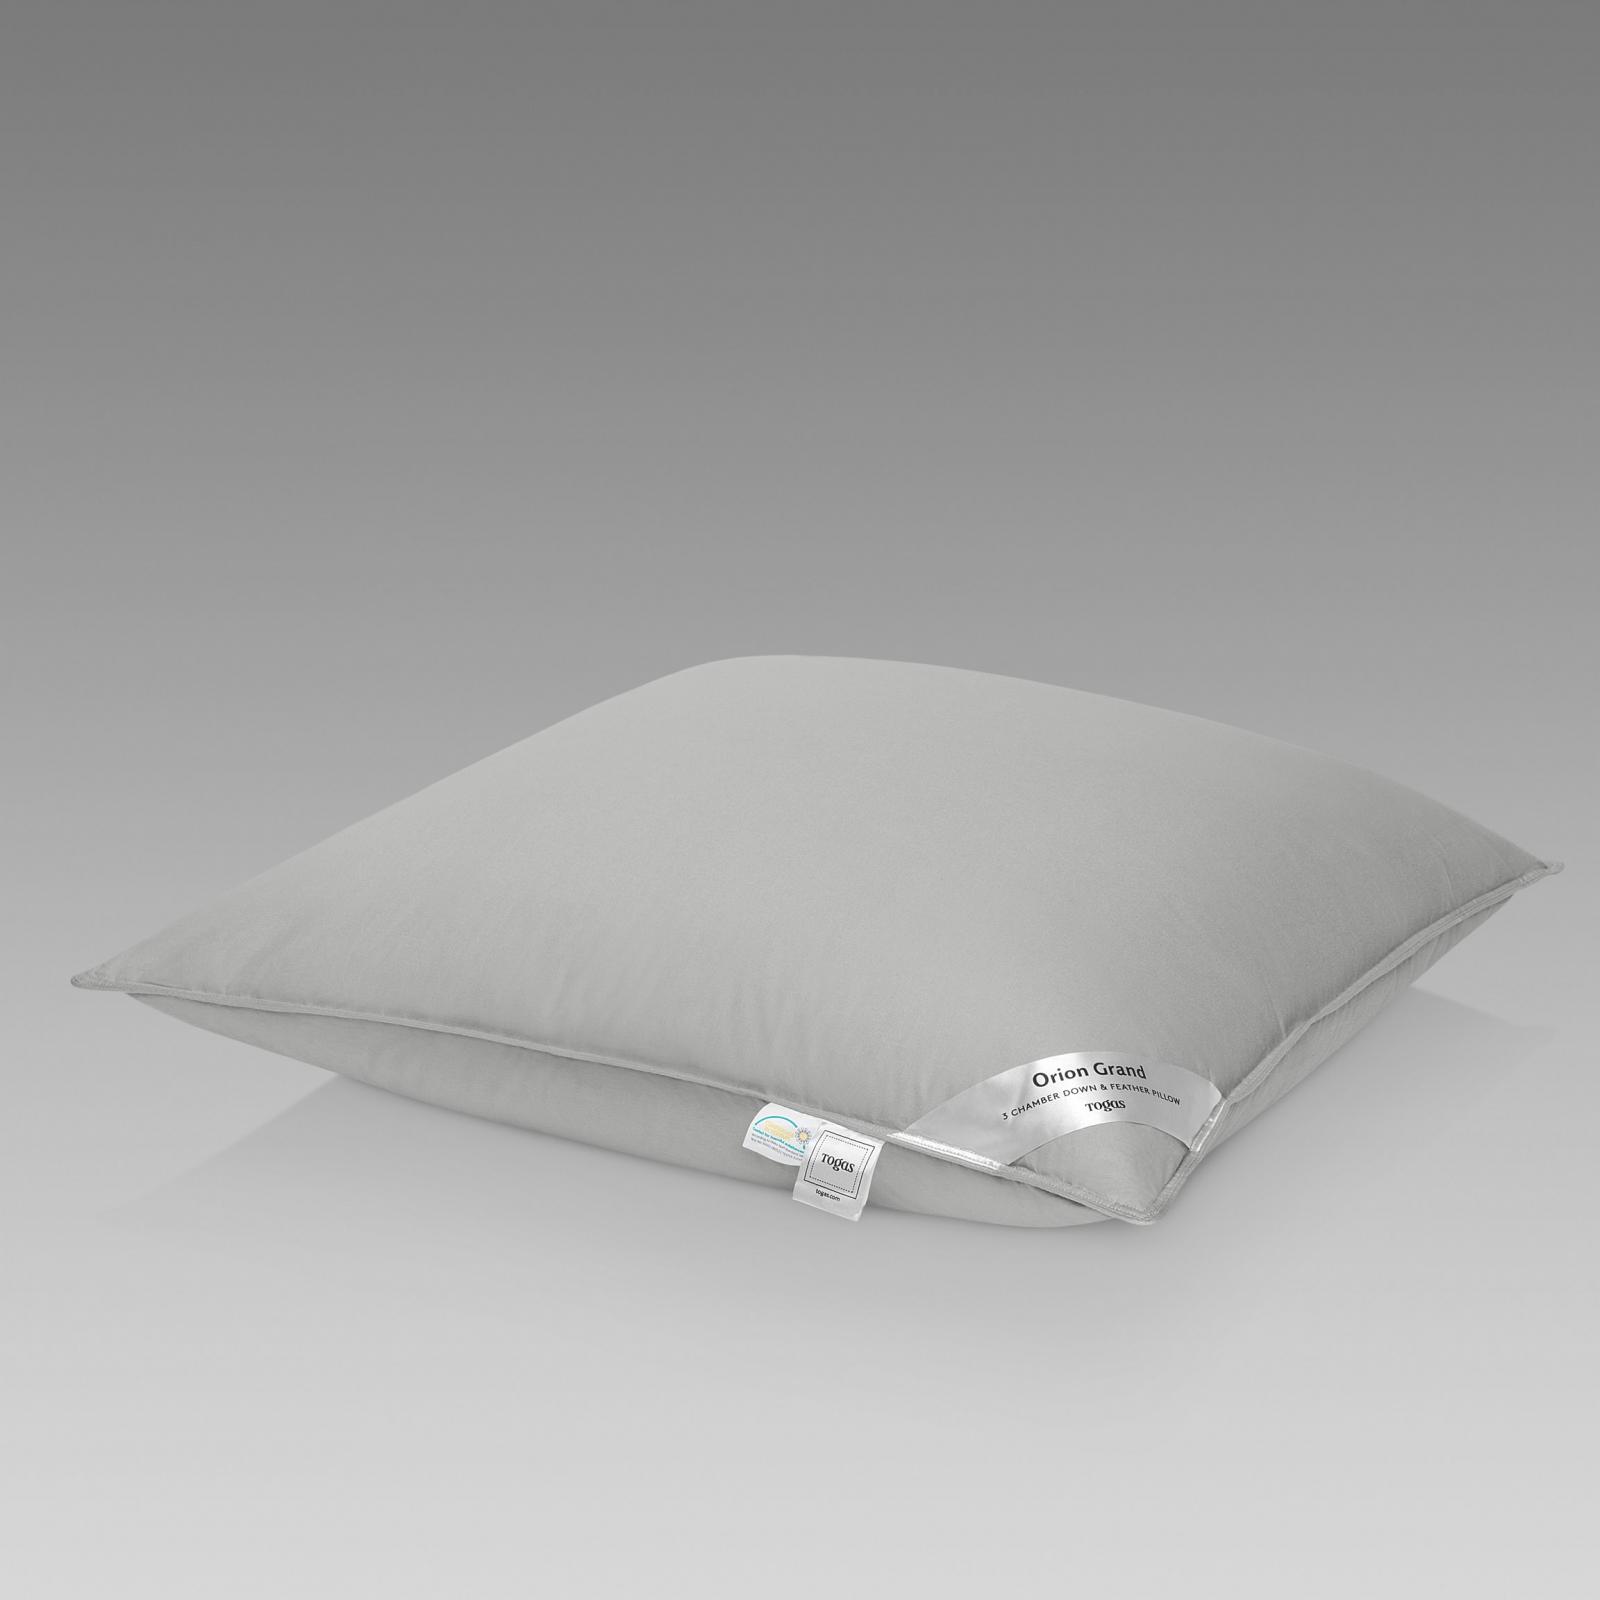 Подушка Togas Орион Гранд серая 70х70 см (20.05.19.0041) подушка эмоций грей р 70х70